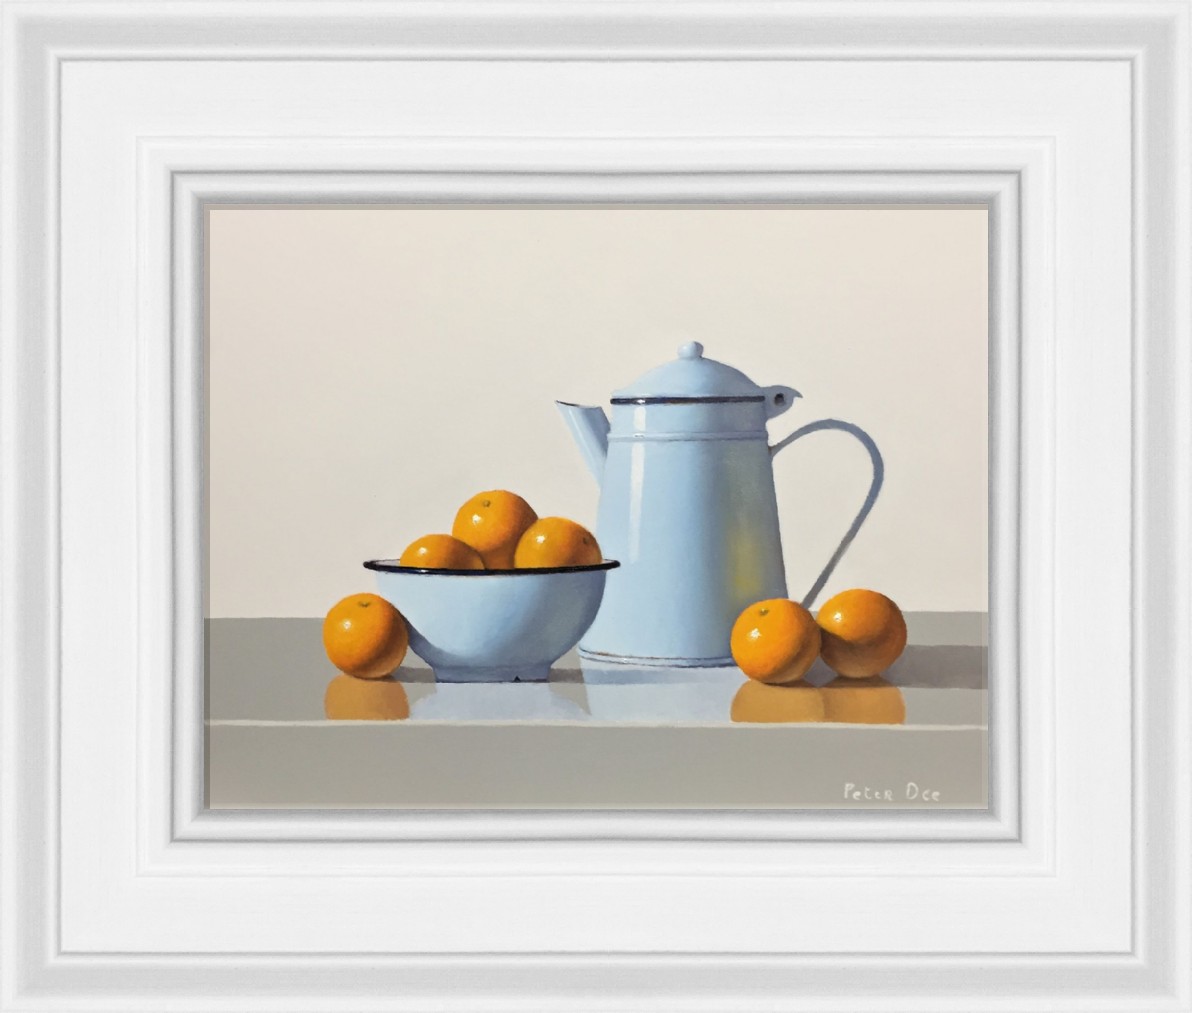 Vintage Blue Enamelware with Oranges by Peter Dee